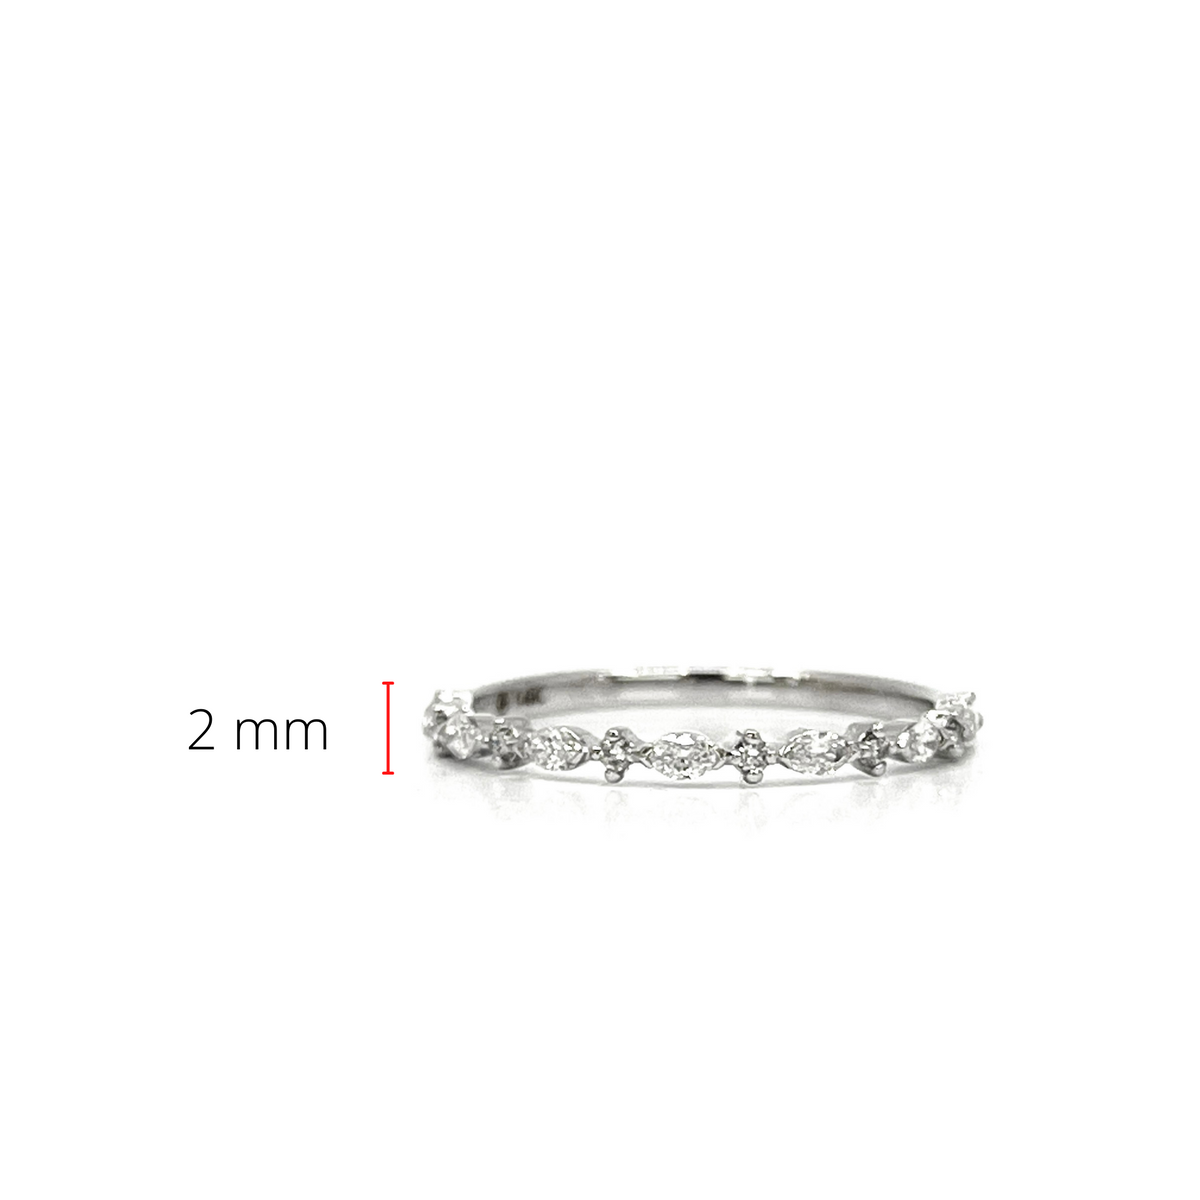 10K White Gold 0.235cttw Diamond Ring, size 6.75